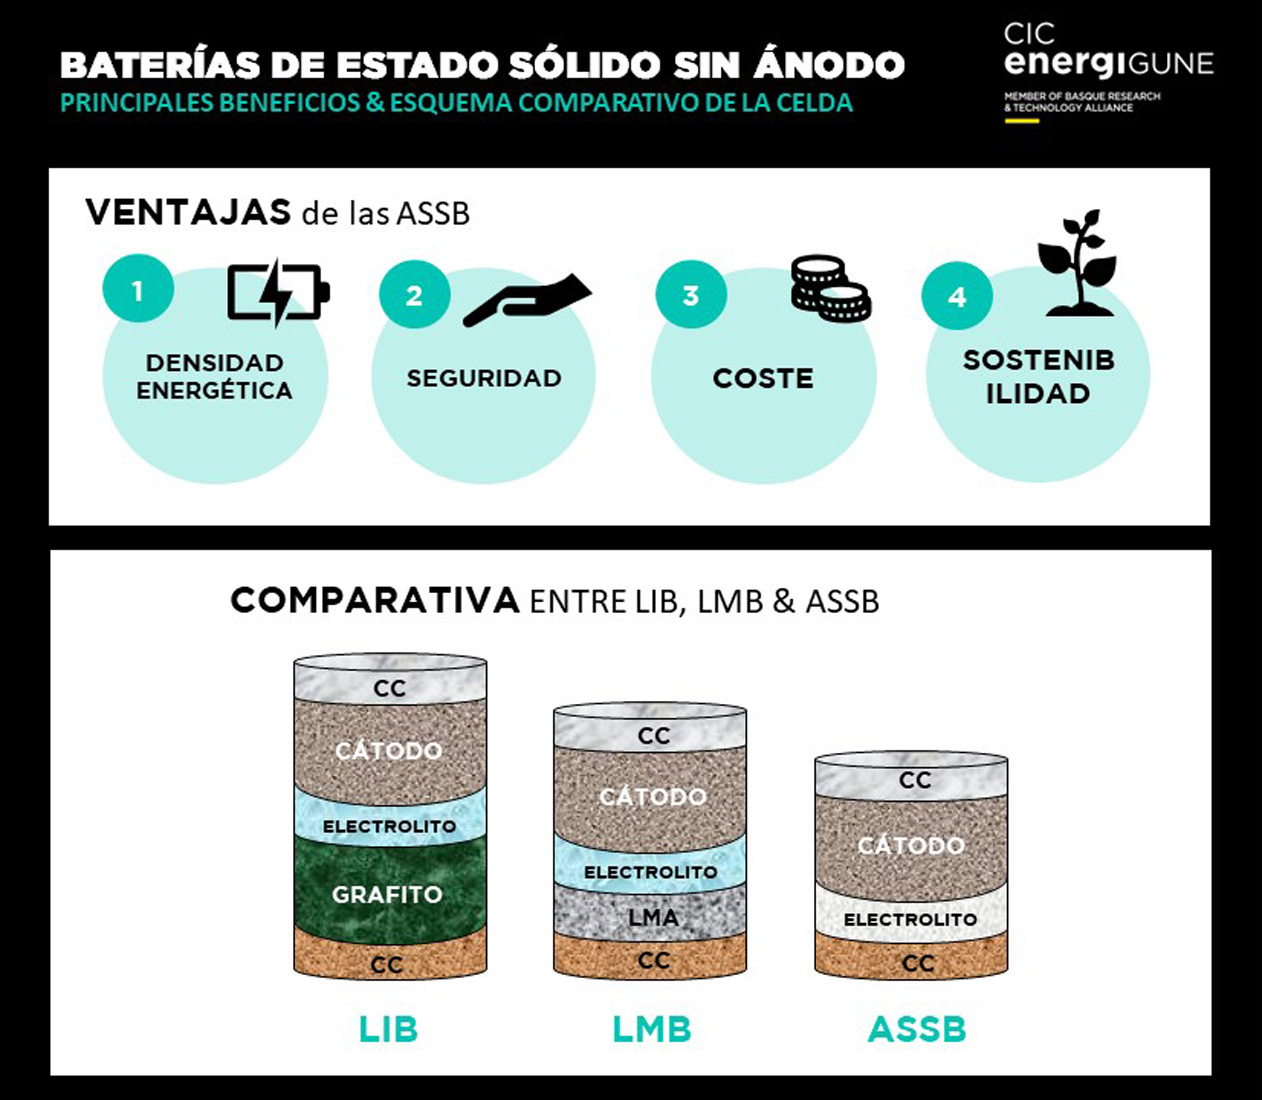 Baterías de estado sólido sin ánodo: ventajas (densidad energética, seguridad, coste y sostenibilidad) y esquema comparativo entre LIB,LMB y ASSB.